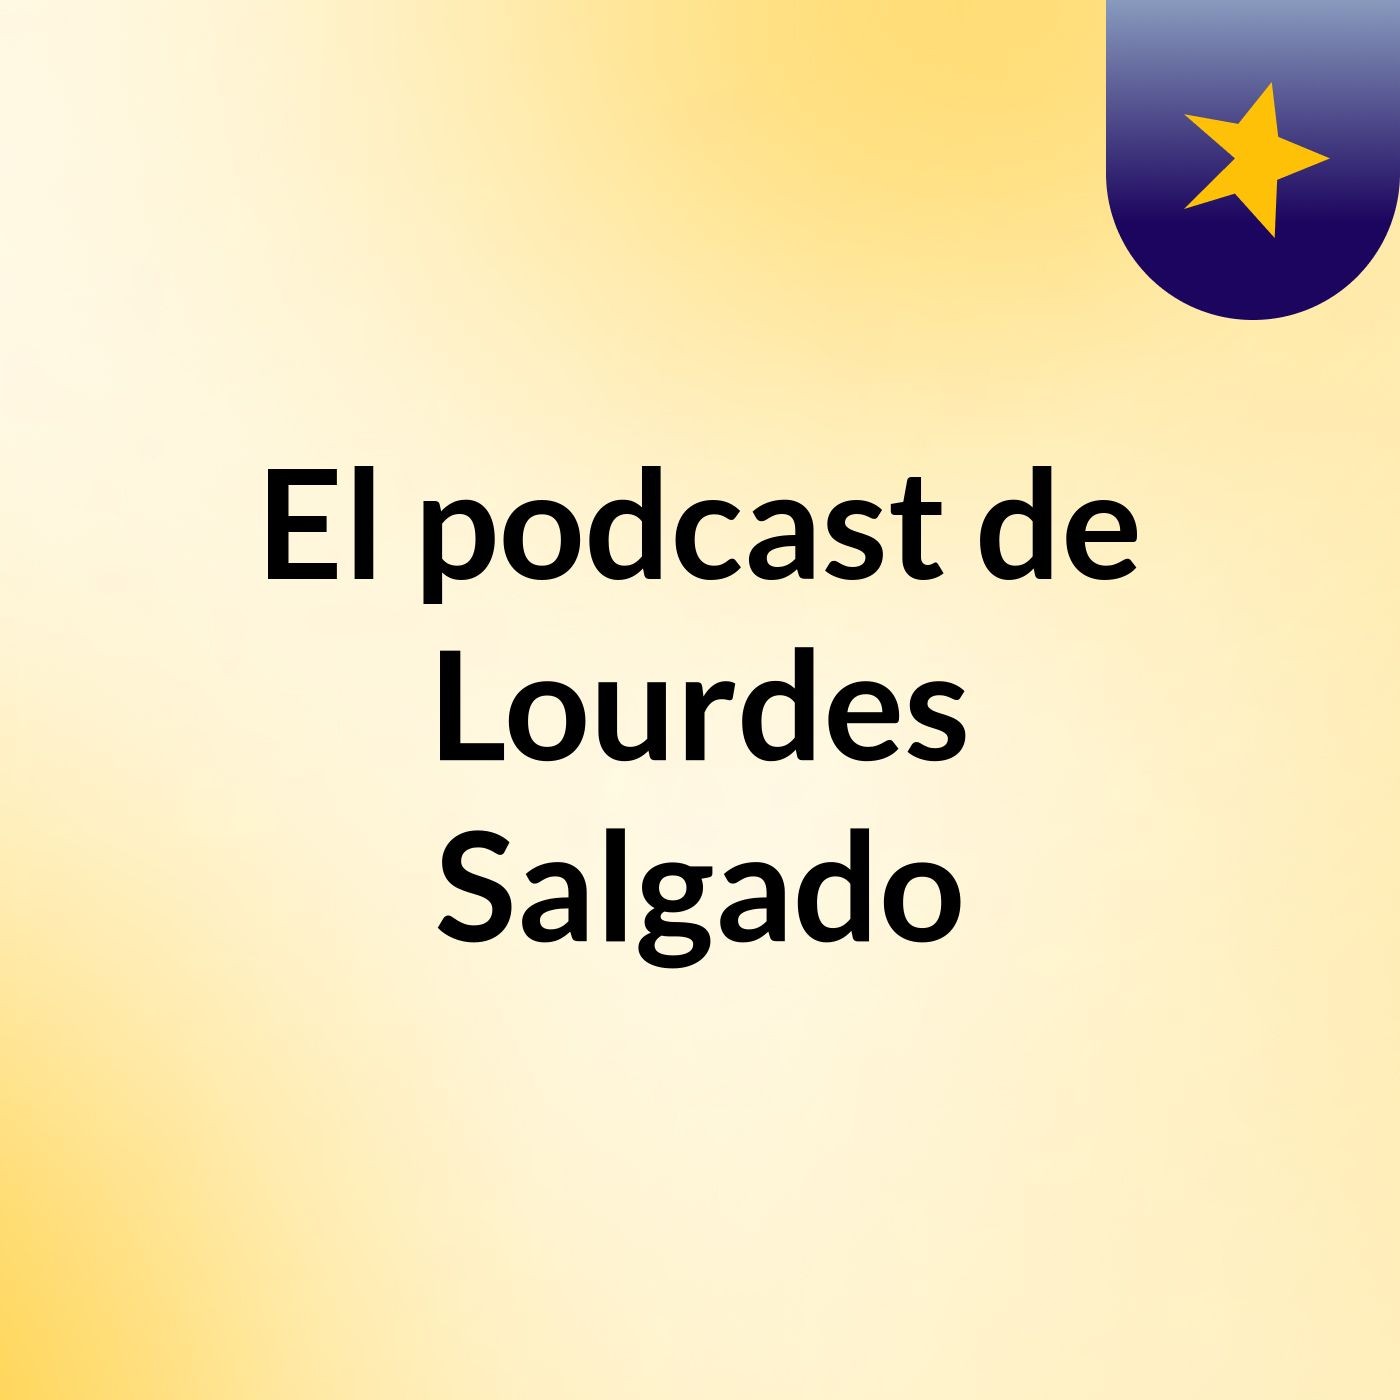 El podcast de Lourdes Salgado